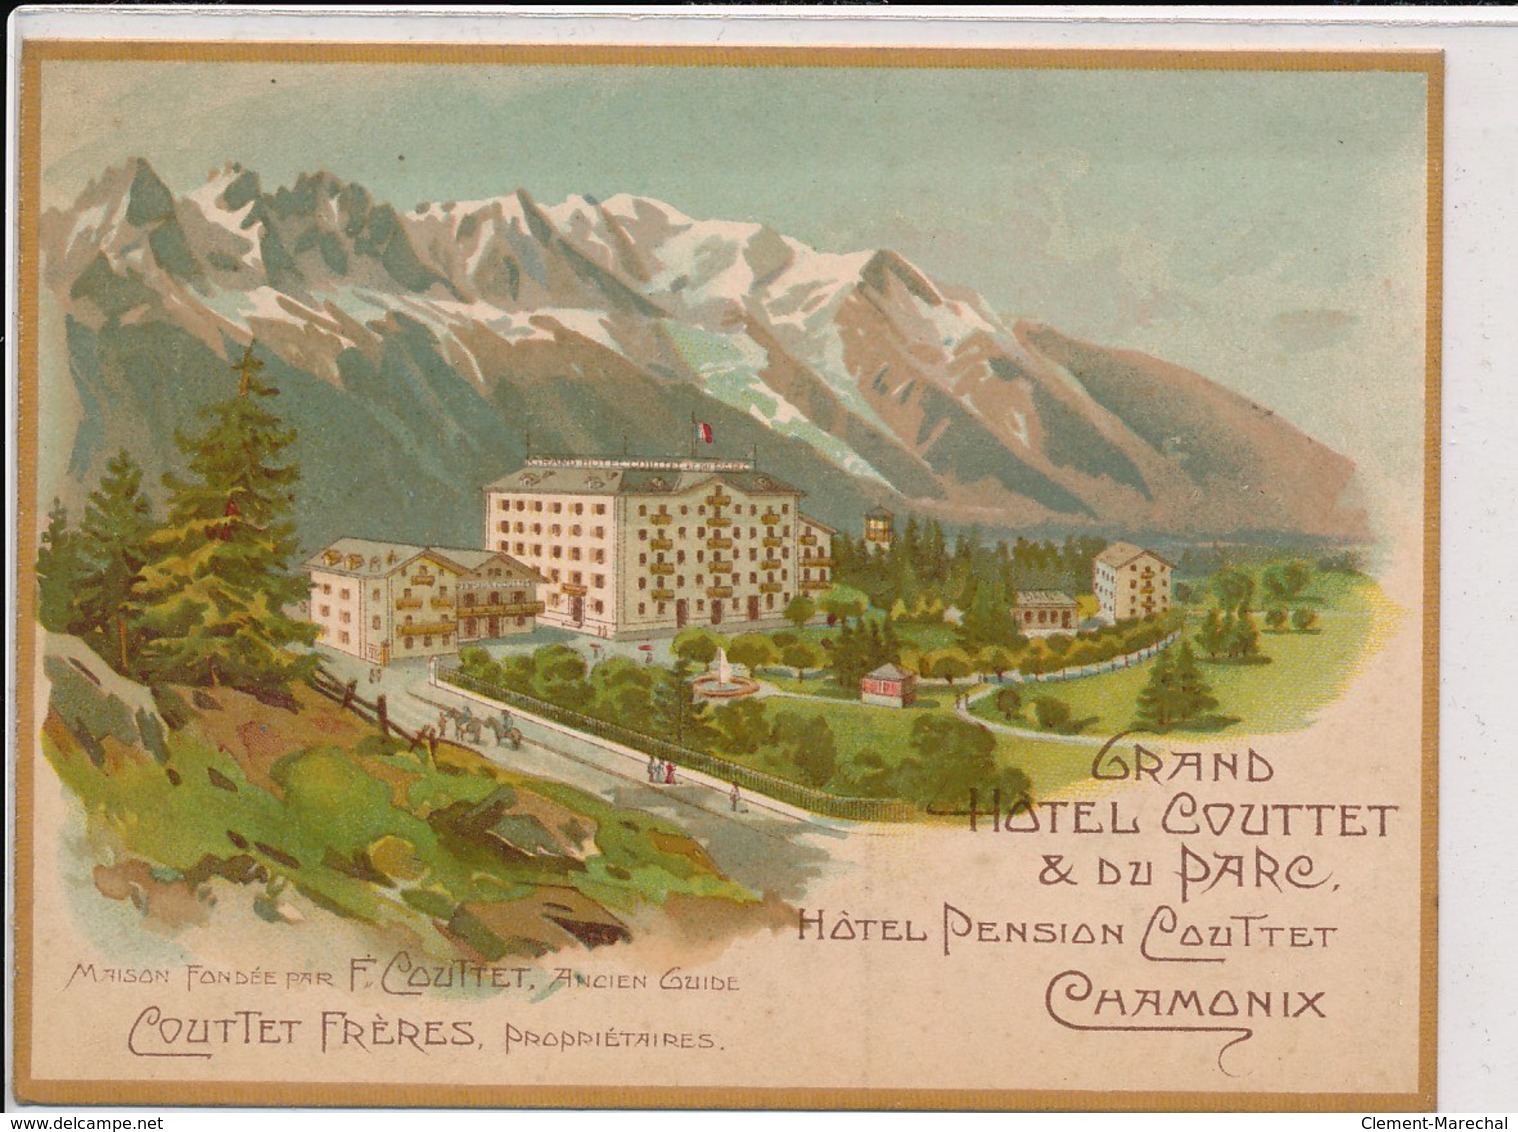 CHAMONIX : Grand Hotel Coutter & Du Parc, Hotel Pension Couttet - Etat - Chamonix-Mont-Blanc